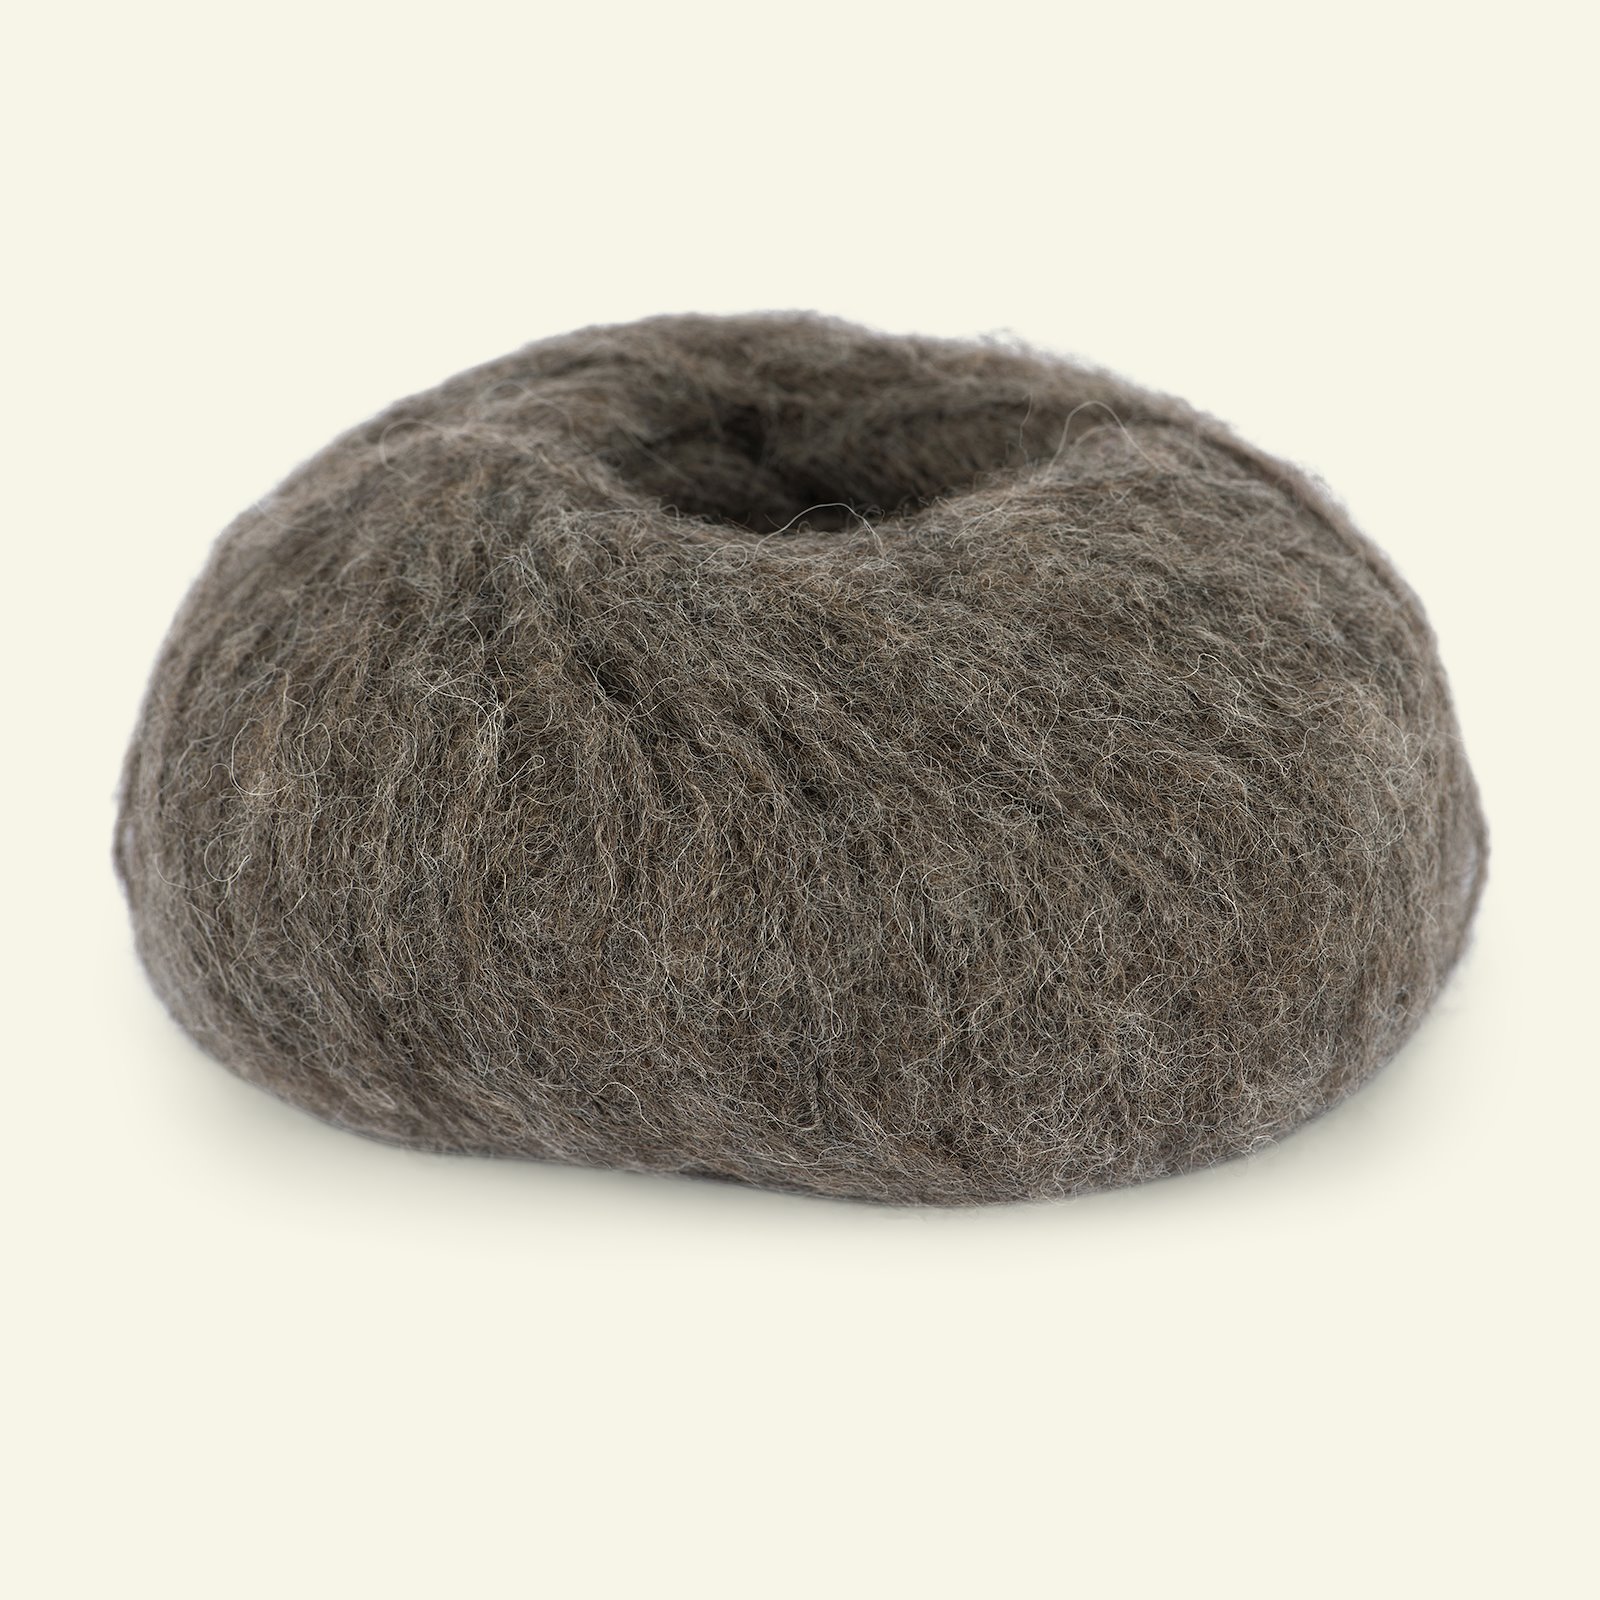 Du Store Alpakka, airy alpaca yarn "Faerytale", brown melange (726) 90000585_pack_b